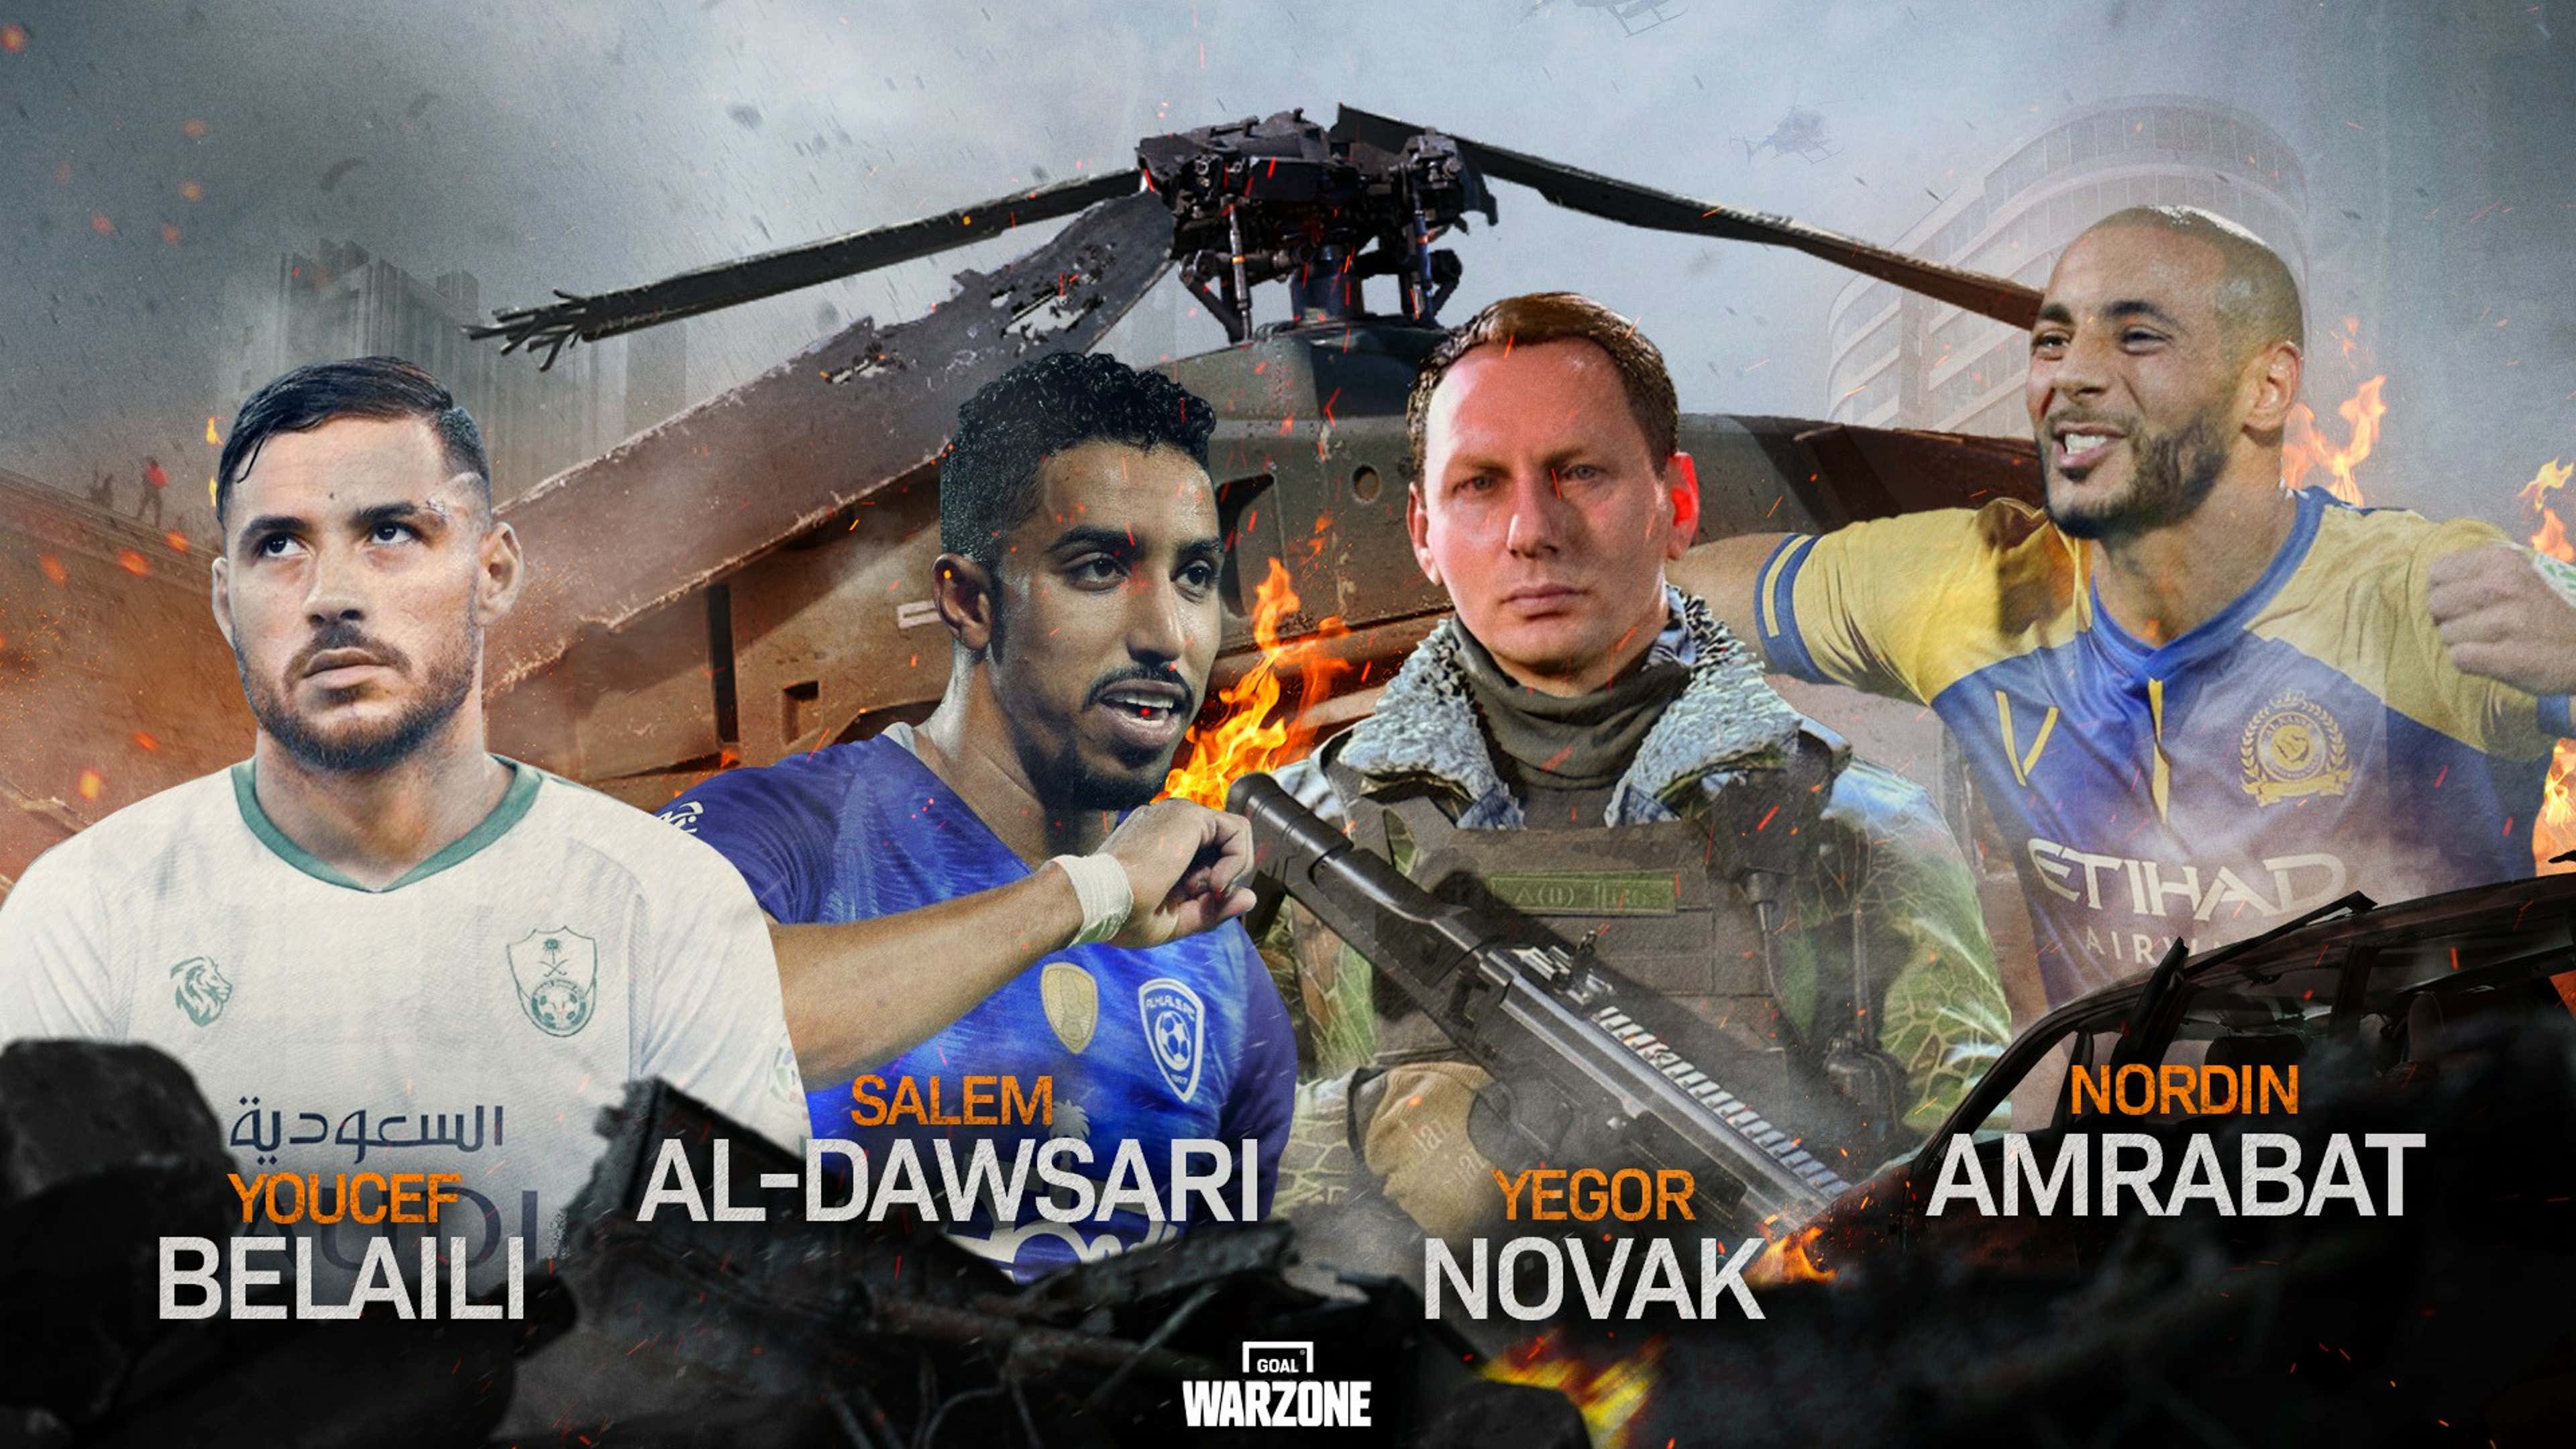 مصر Call of Duty Mobile